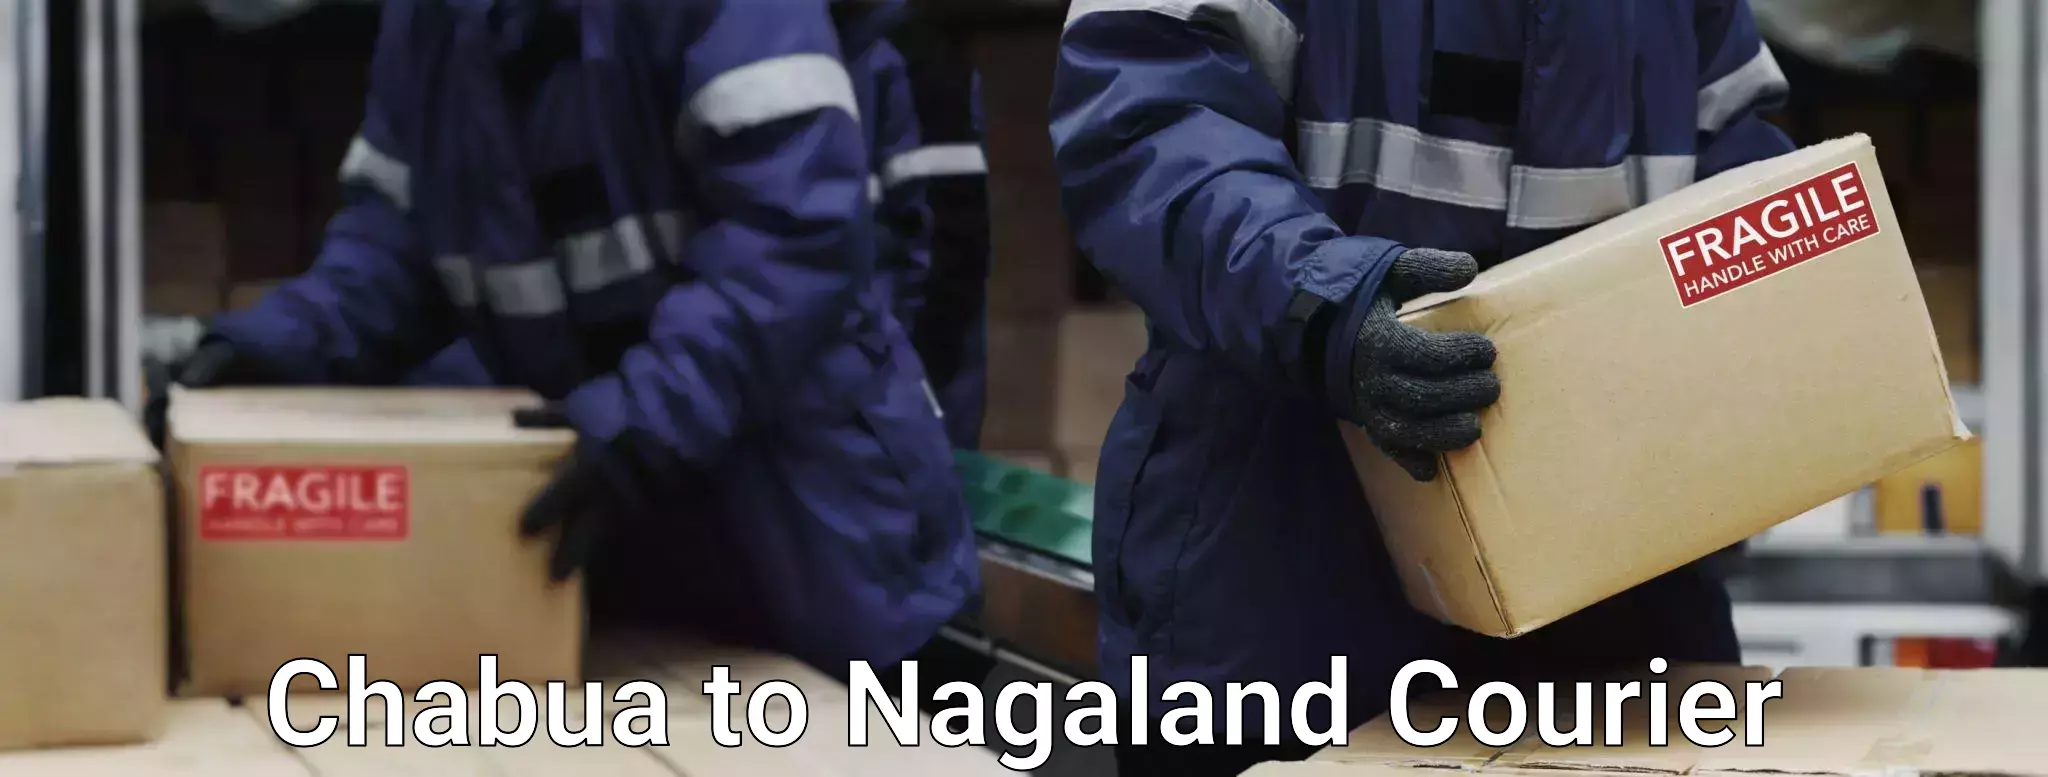 Overnight luggage courier Chabua to NIT Nagaland